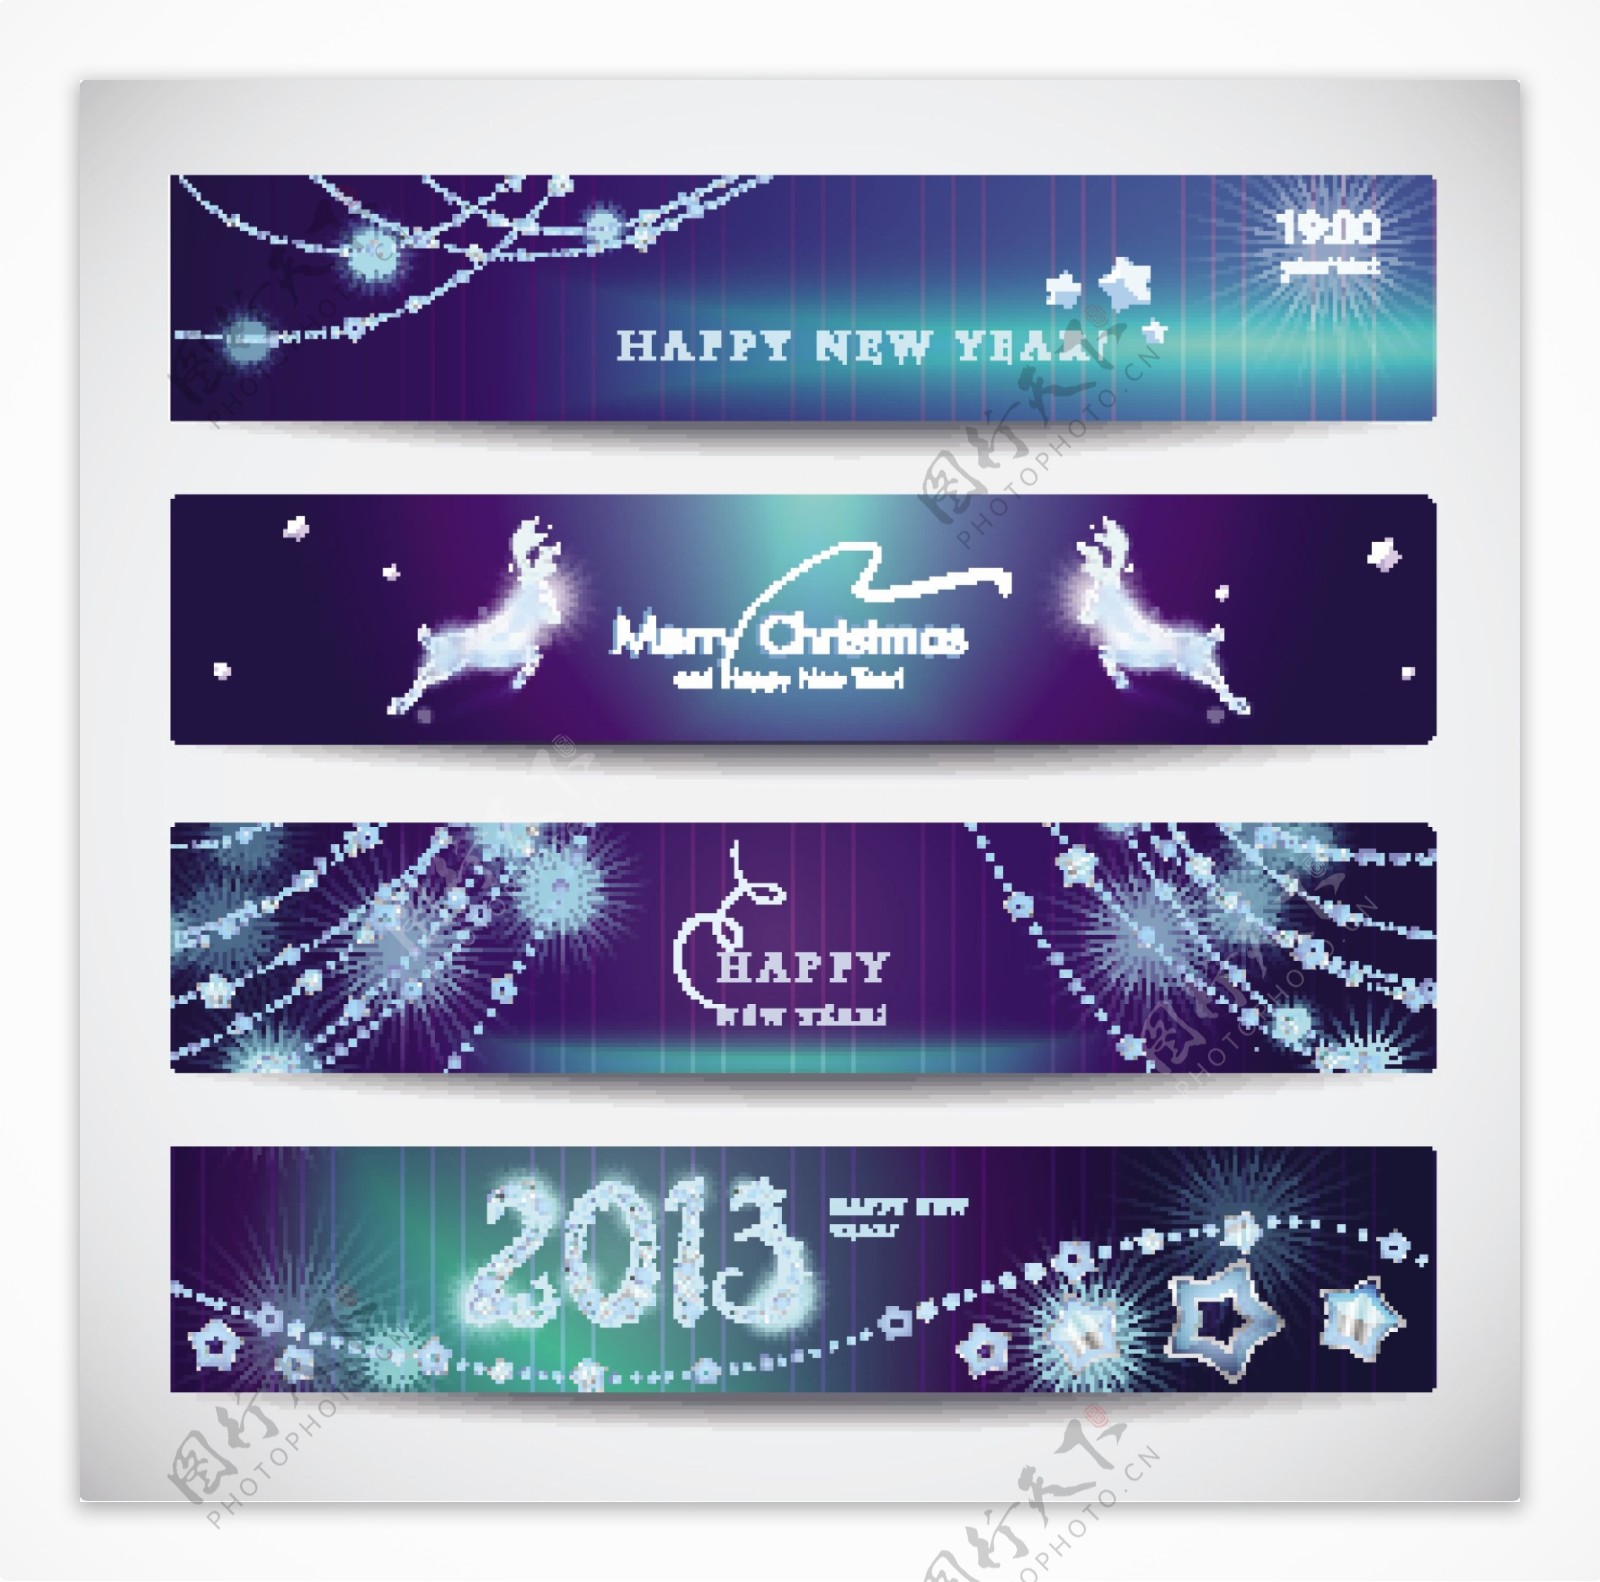 2013新年快乐蓝色横幅矢量素材